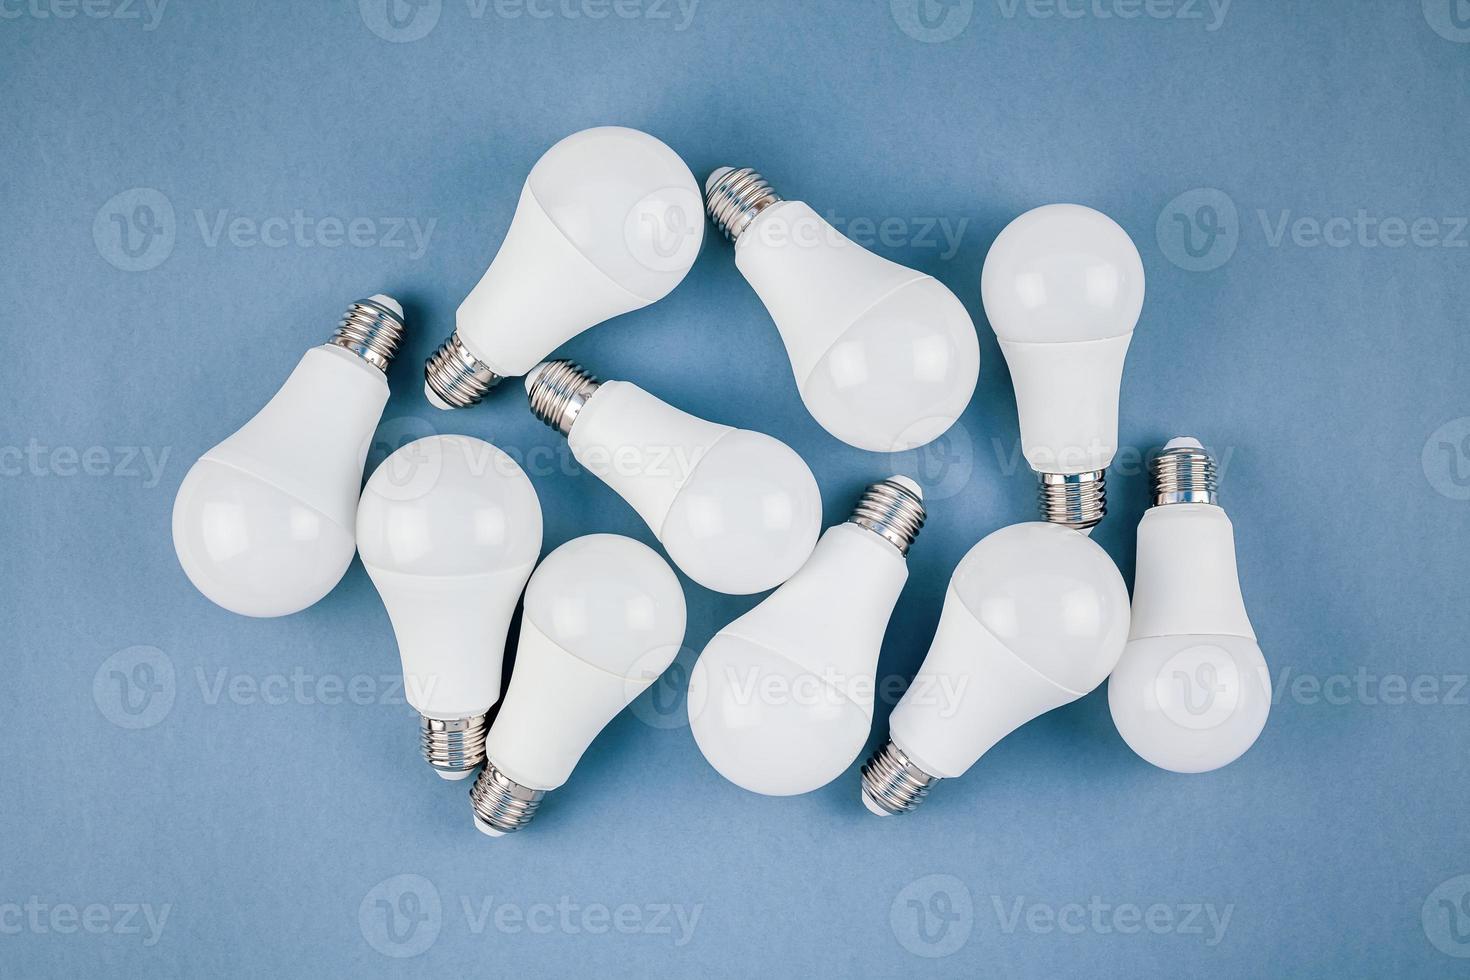 ampoules LED à économie d'énergie et respectueuses de l'environnement photo